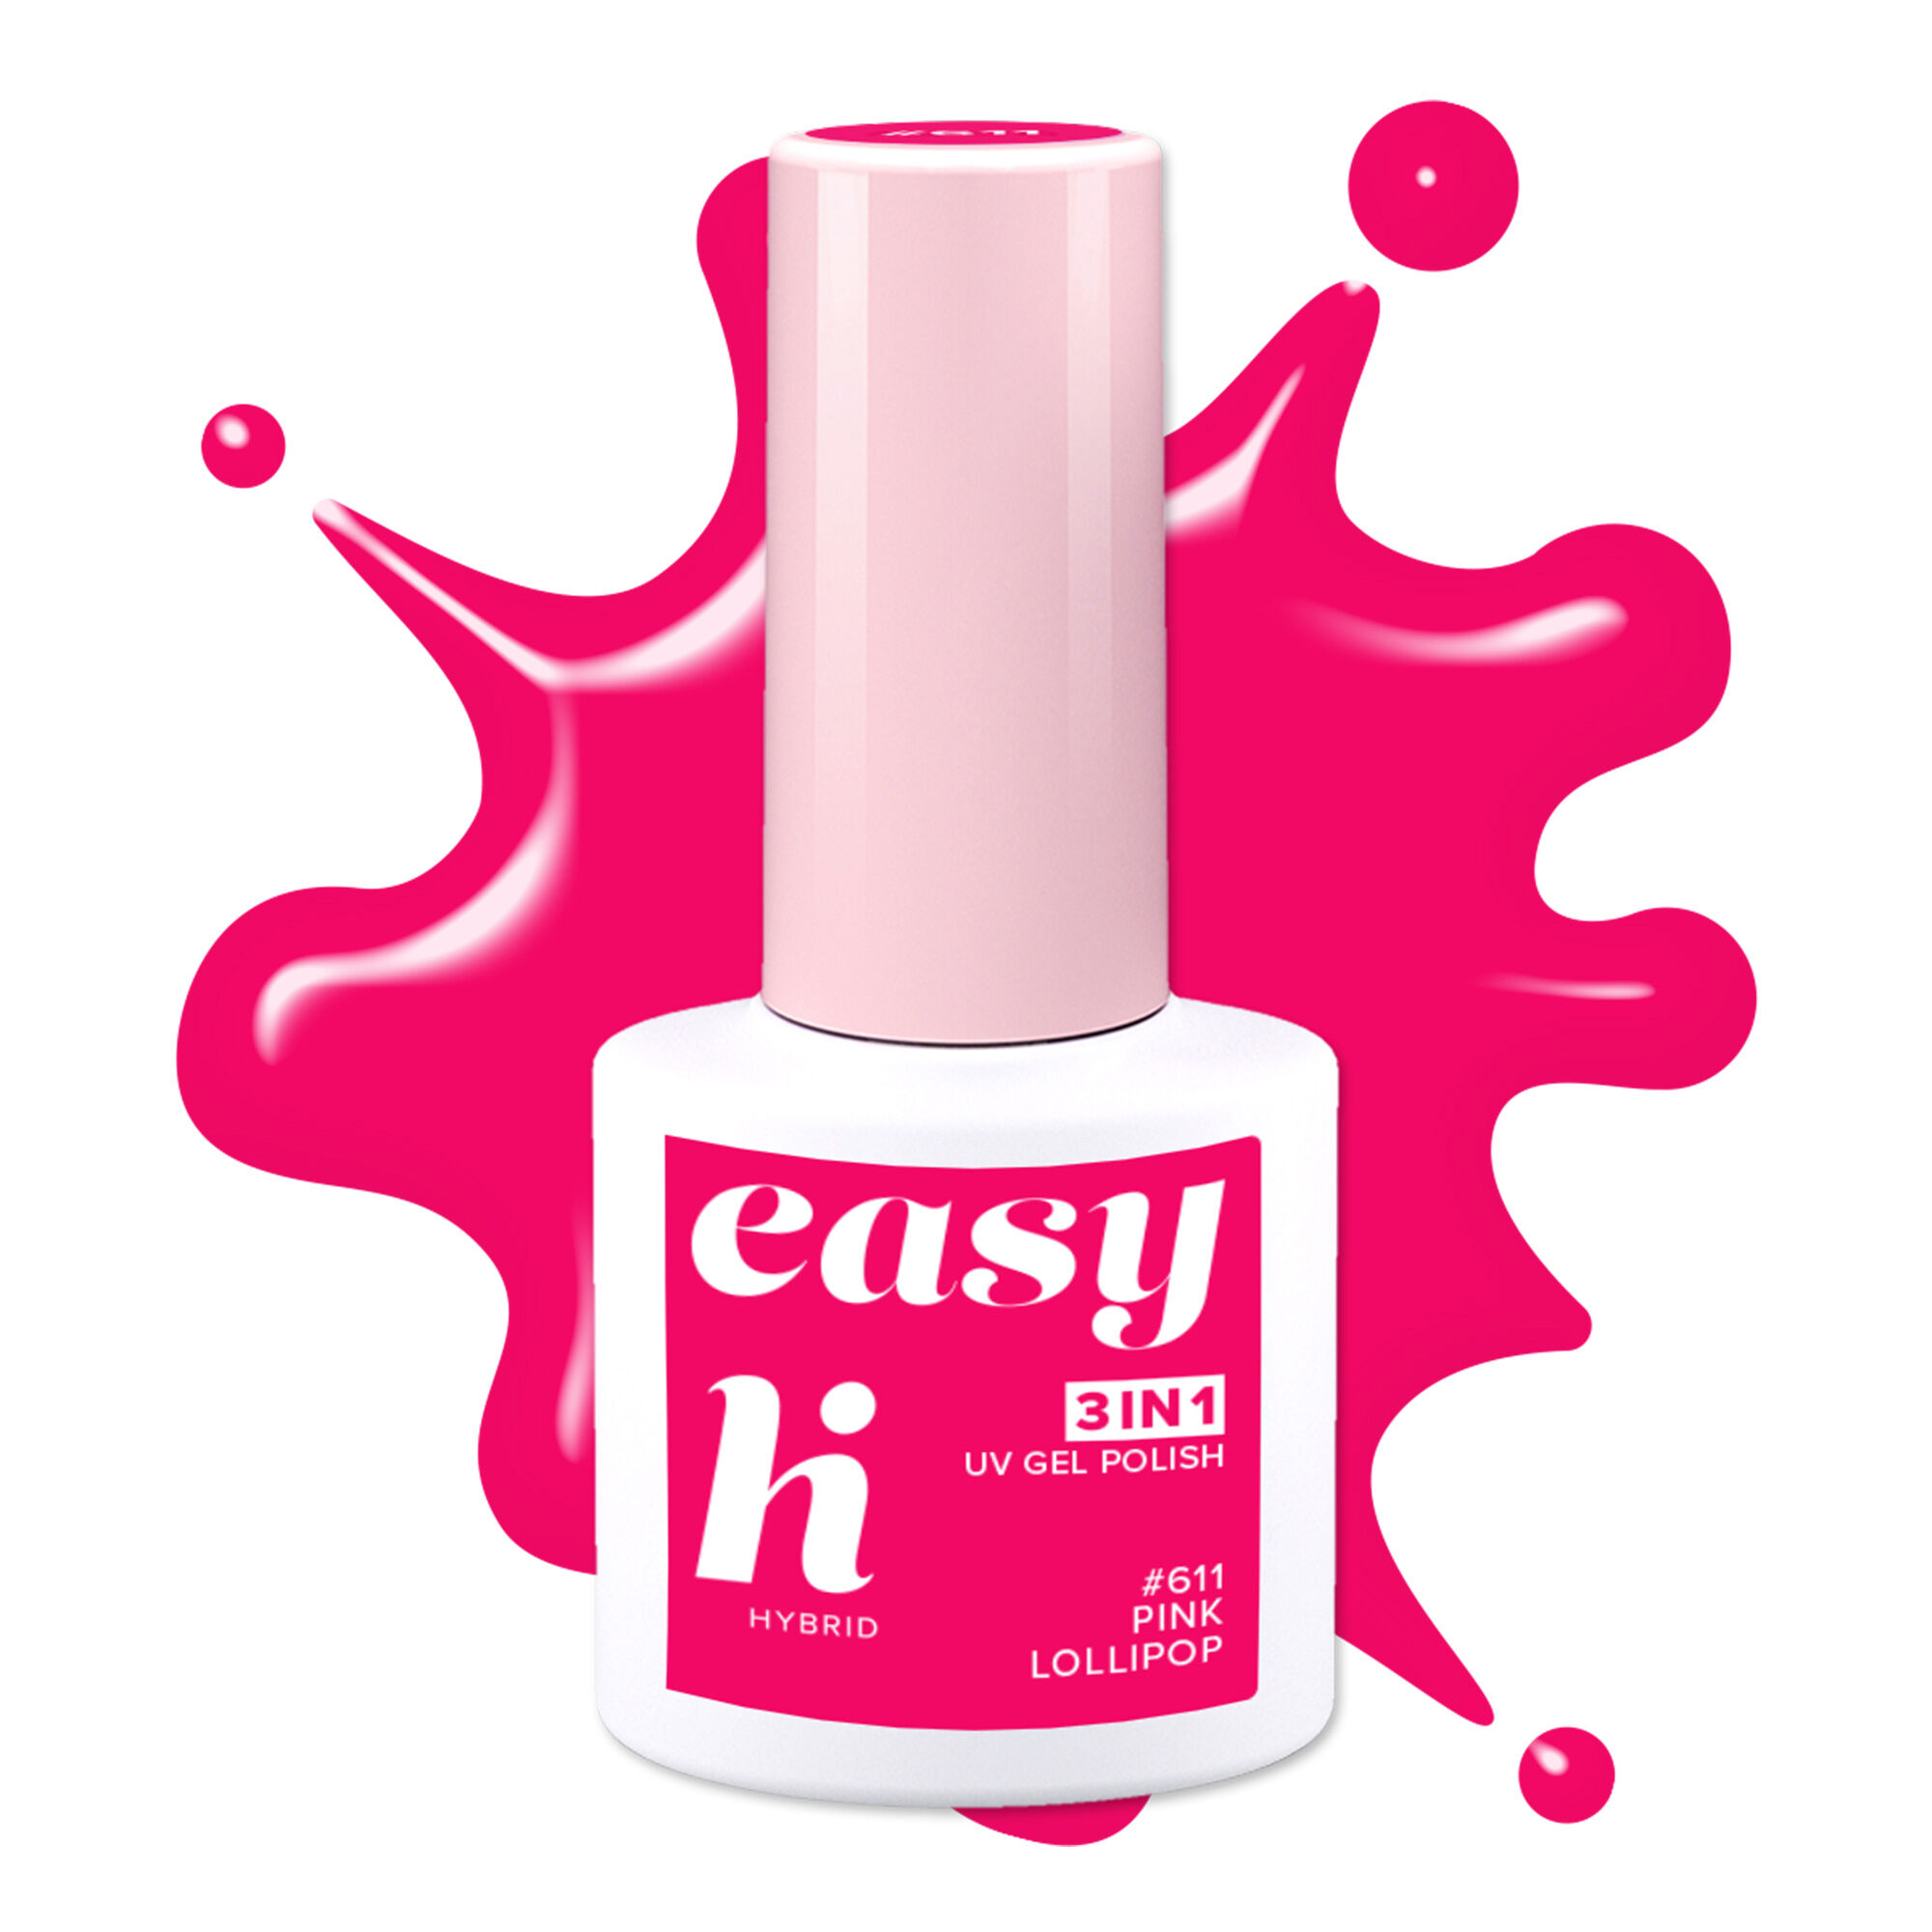 цена Гибридный лак для ногтей 611 розовый леденец Hi Hybrid Easy 3W1, 5 мл